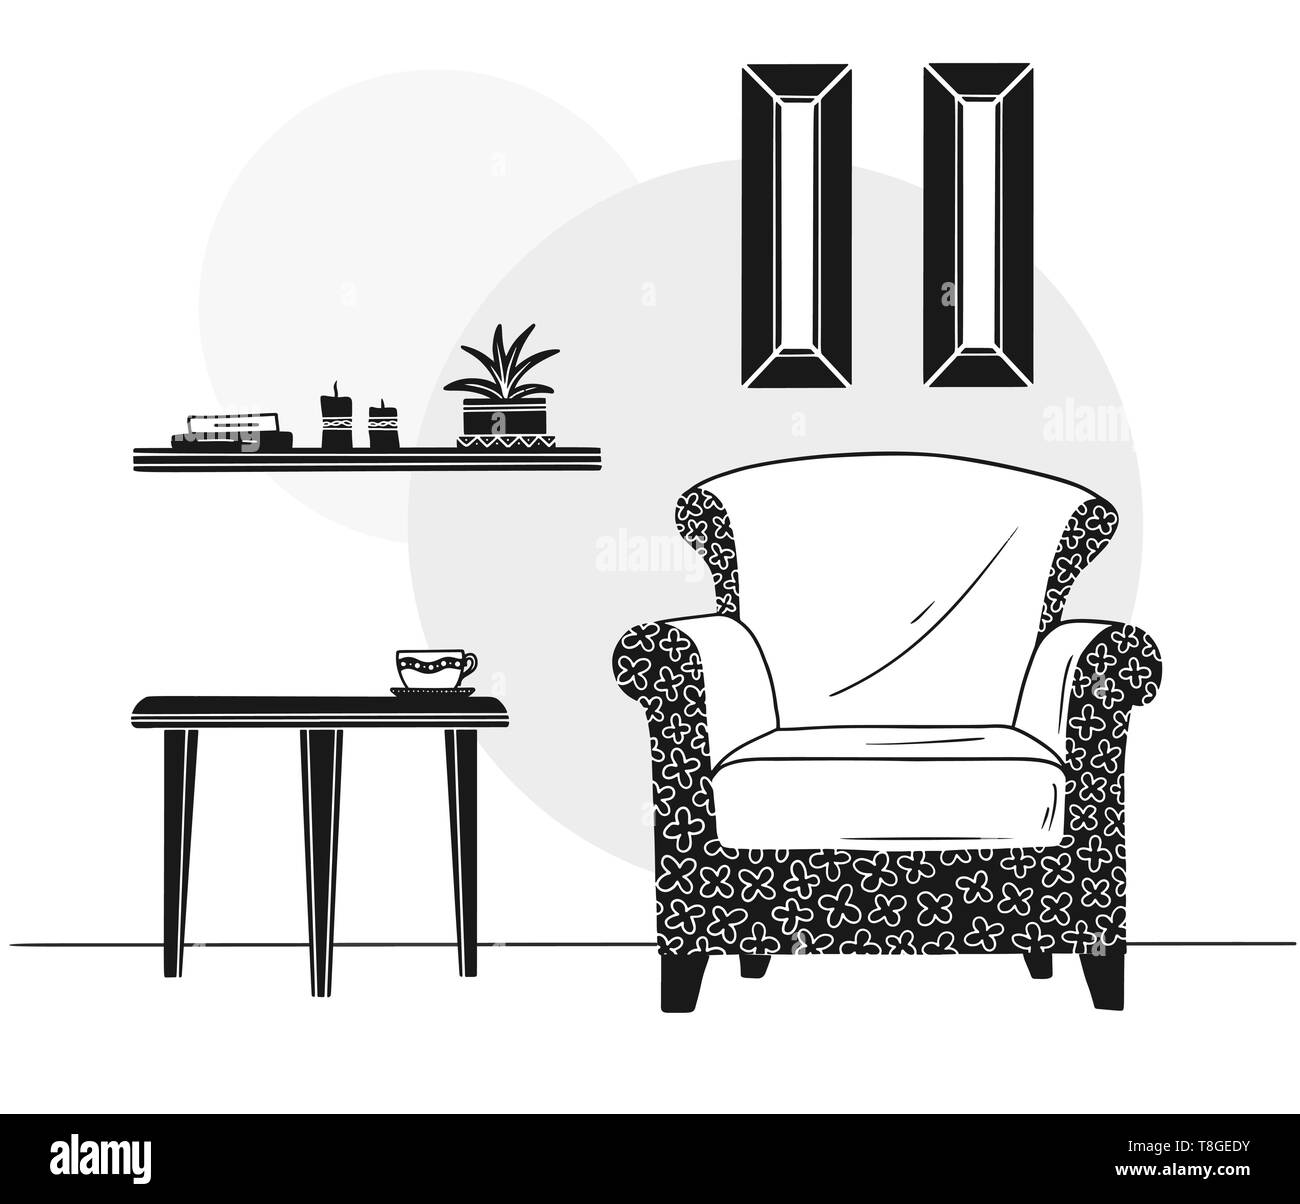 Silla, mesa con taza. Estantería con libros y plantas. Ilustración vectorial dibujada a mano de un estilo de dibujo Ilustración del Vector